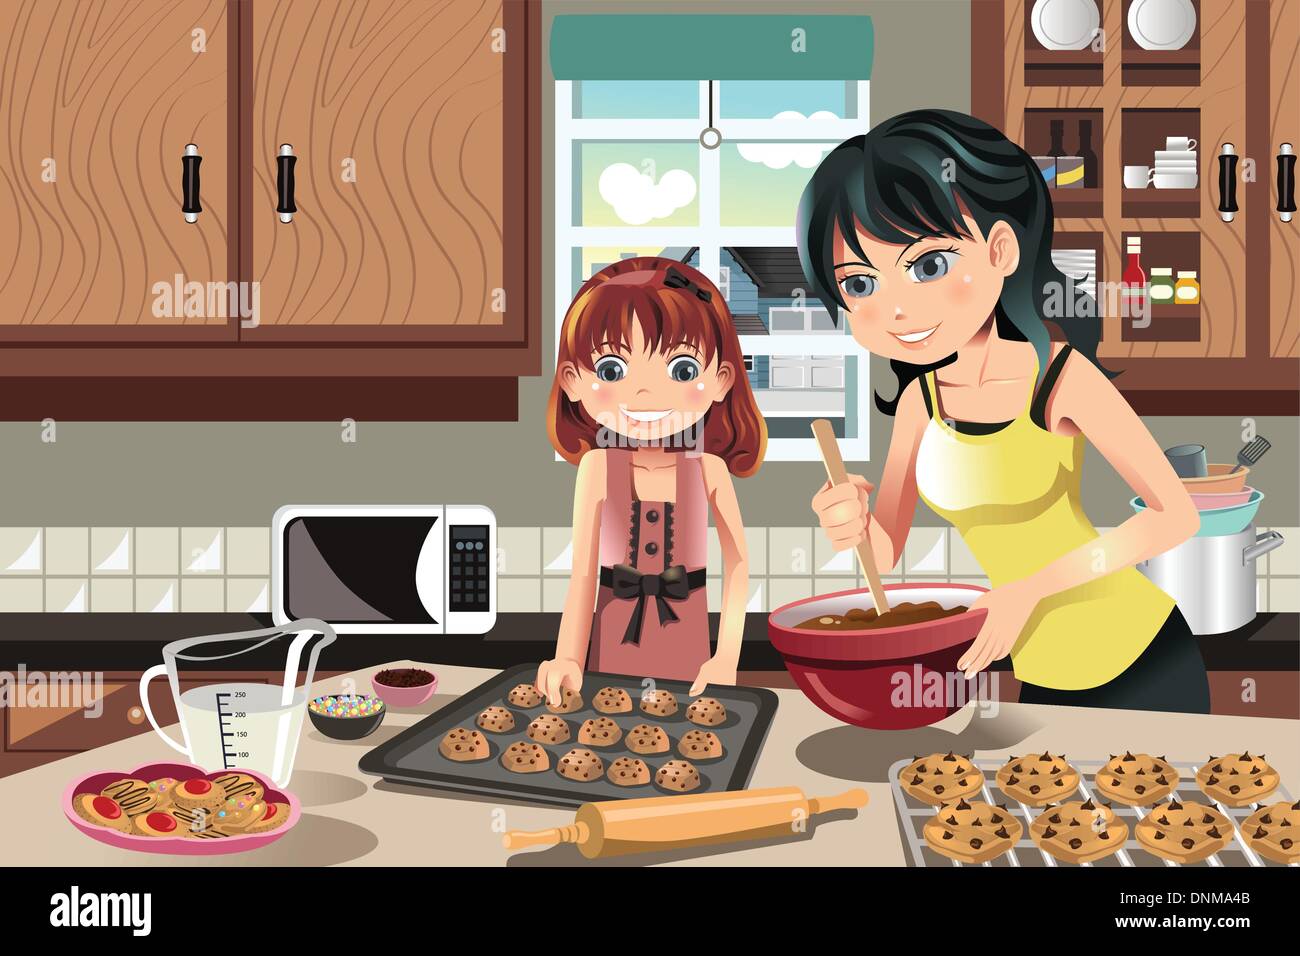 Пироги готовит мама. Мама и дочка пекут печенье. Мама готовит с детьми иллюстрация. Мама с дочкой готовят. Девочка на кухне иллюстрация.